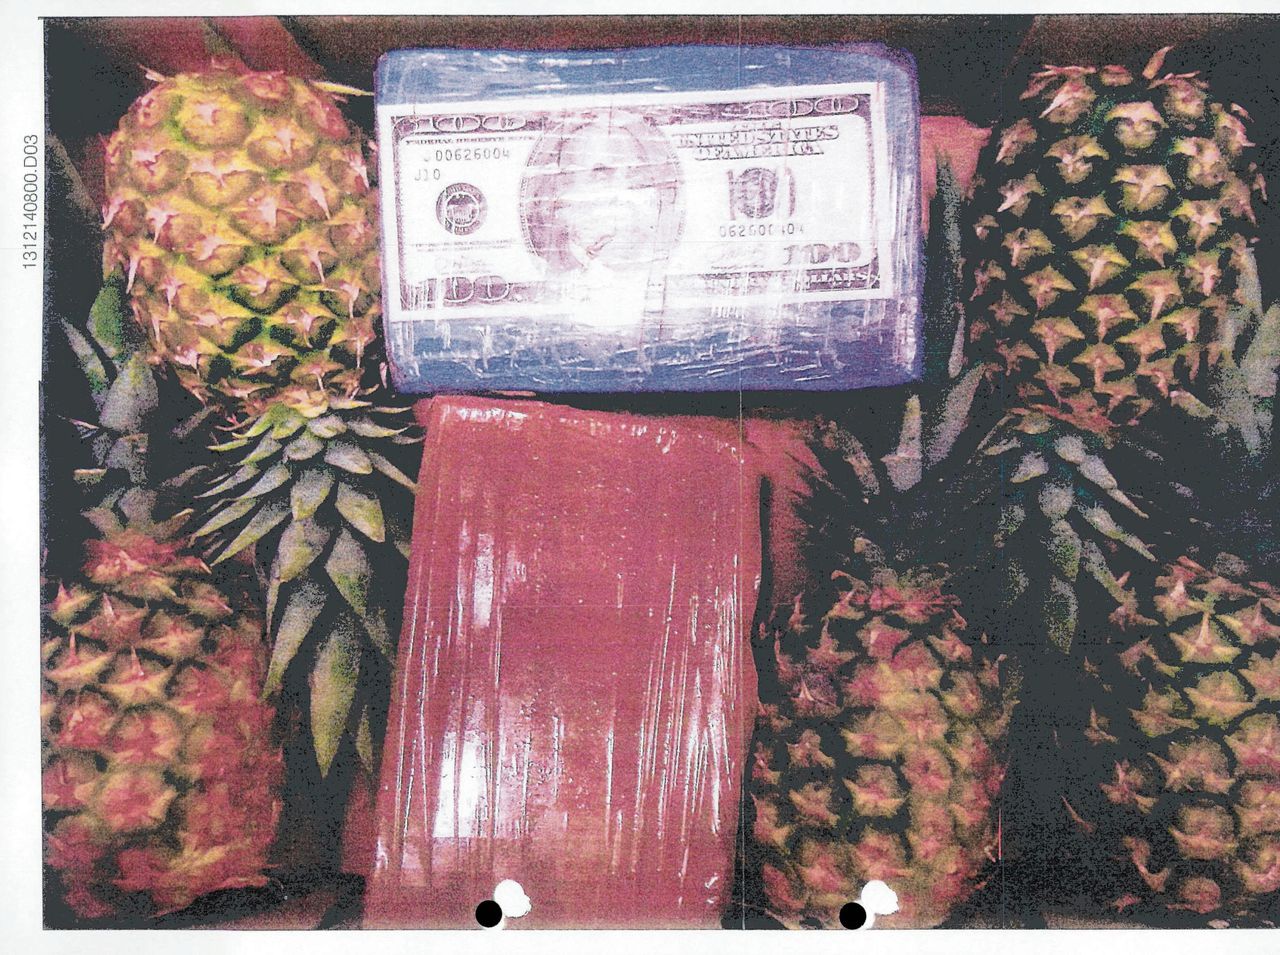 In een lading met ananassen vond de politie eind 2013 ruim 300 blokken cocaïne verpakt in oranje plastic. Ieder blok weegt ongeveer 1 kilo als de verpakking is verwijderd. De handelswaarde van de partij bedroeg circa 10 miljoen euro.